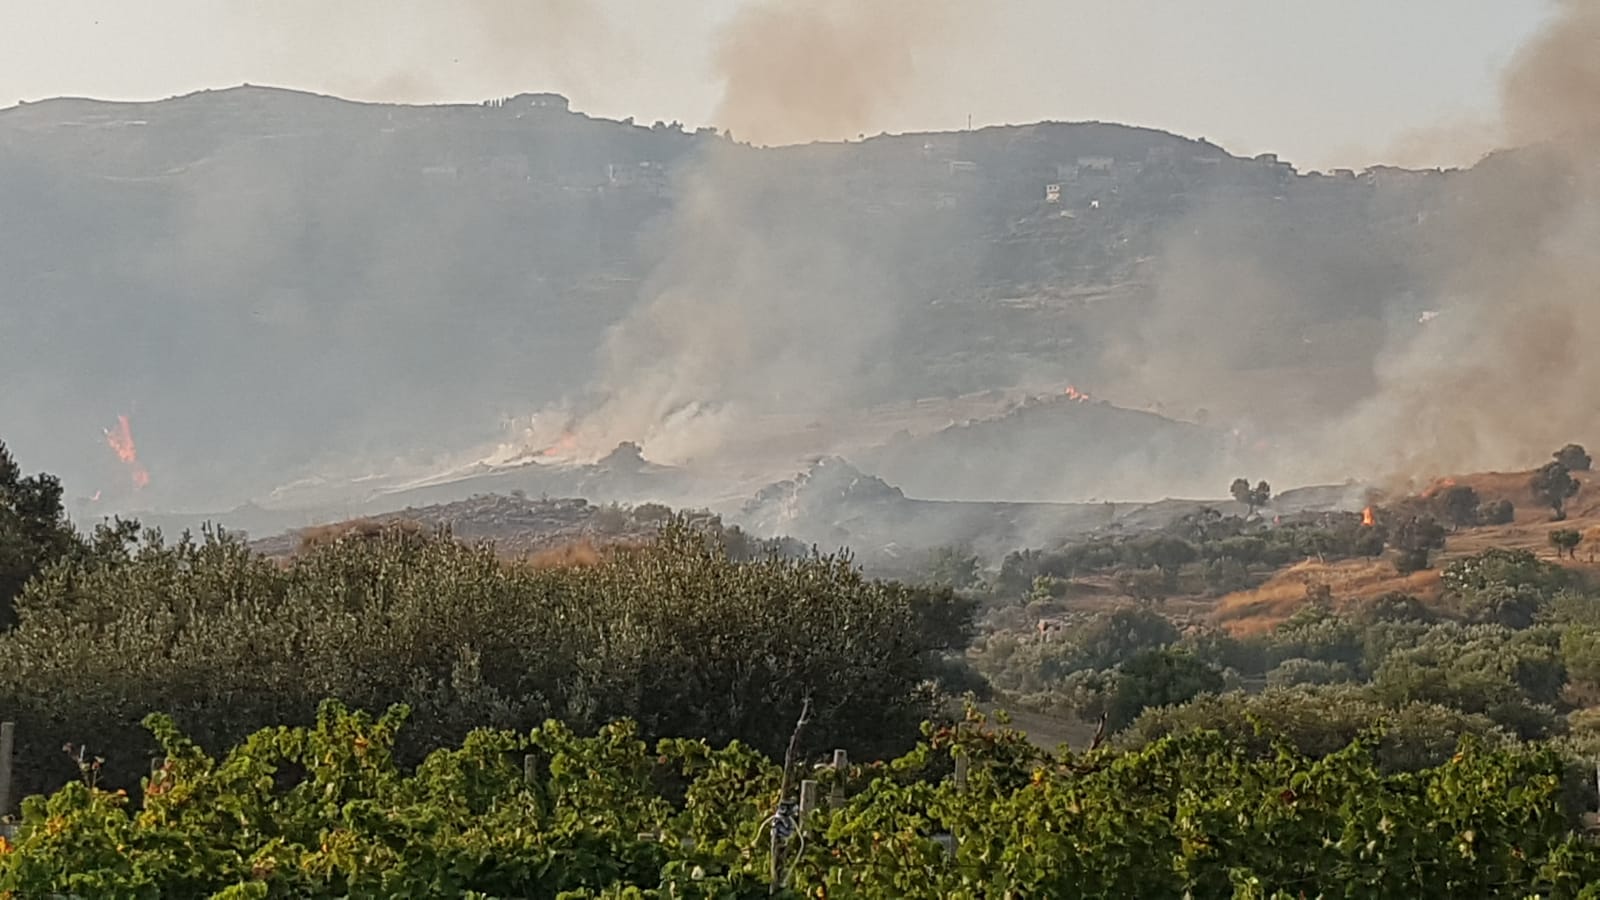 Incendio a Motta San Giovanni, l’amministrazione chiede verifiche e lo stato di calamità